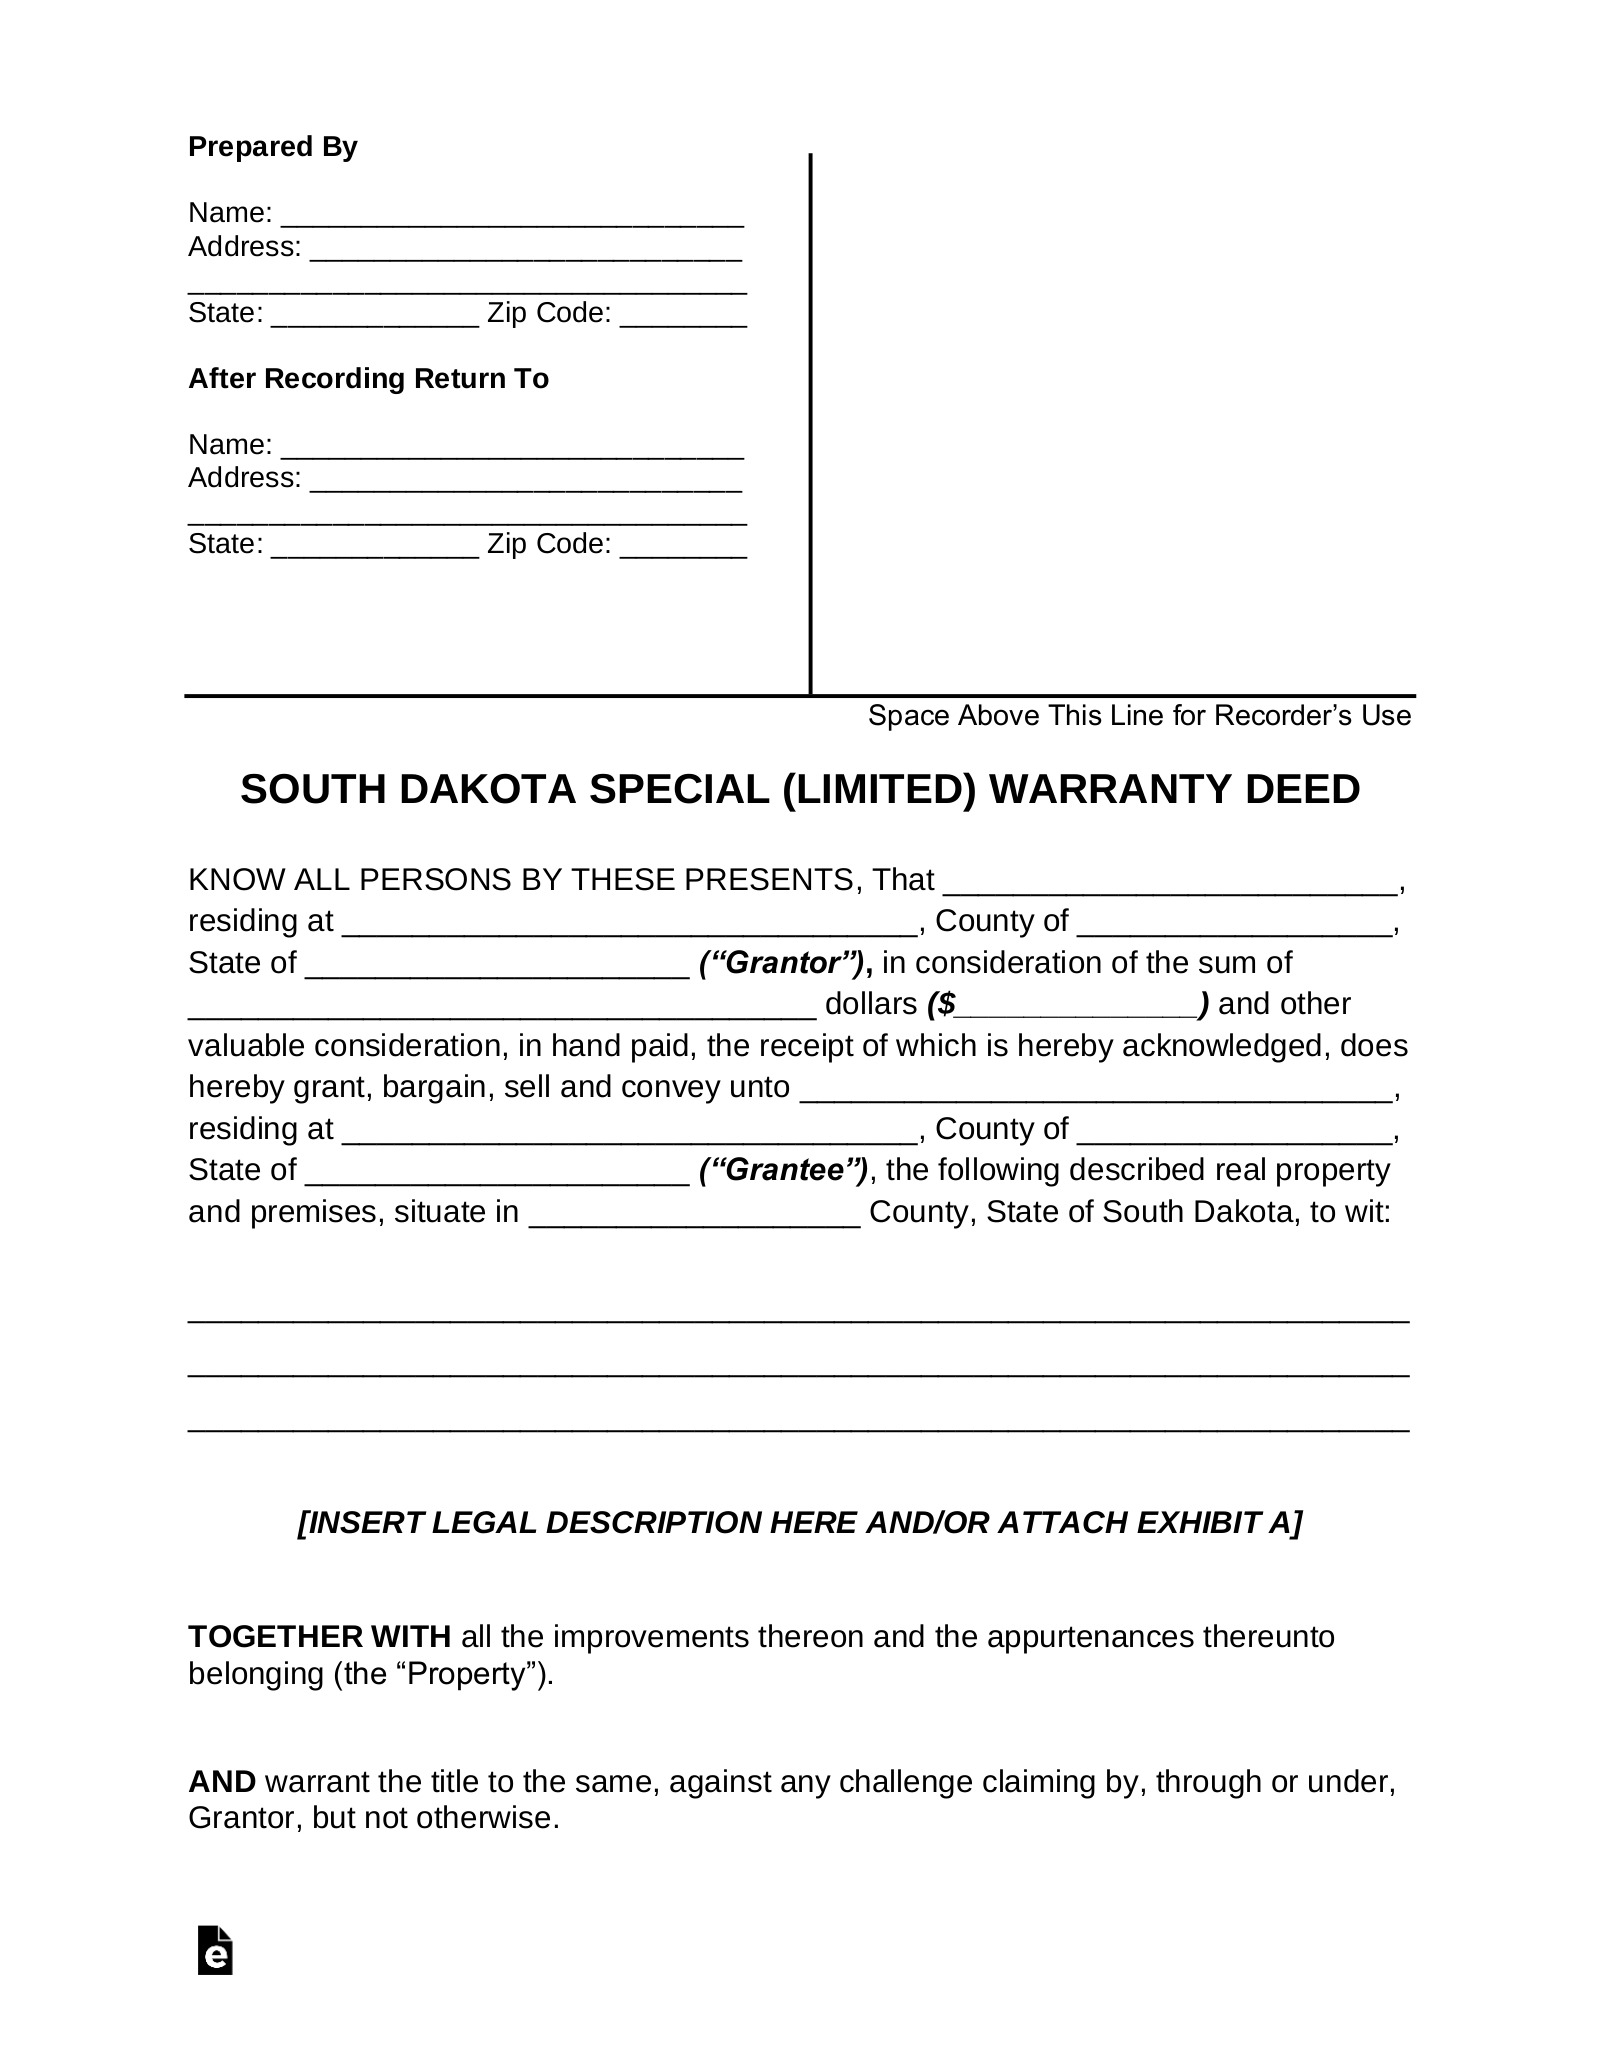 South Dakota Special Warranty Deed Form